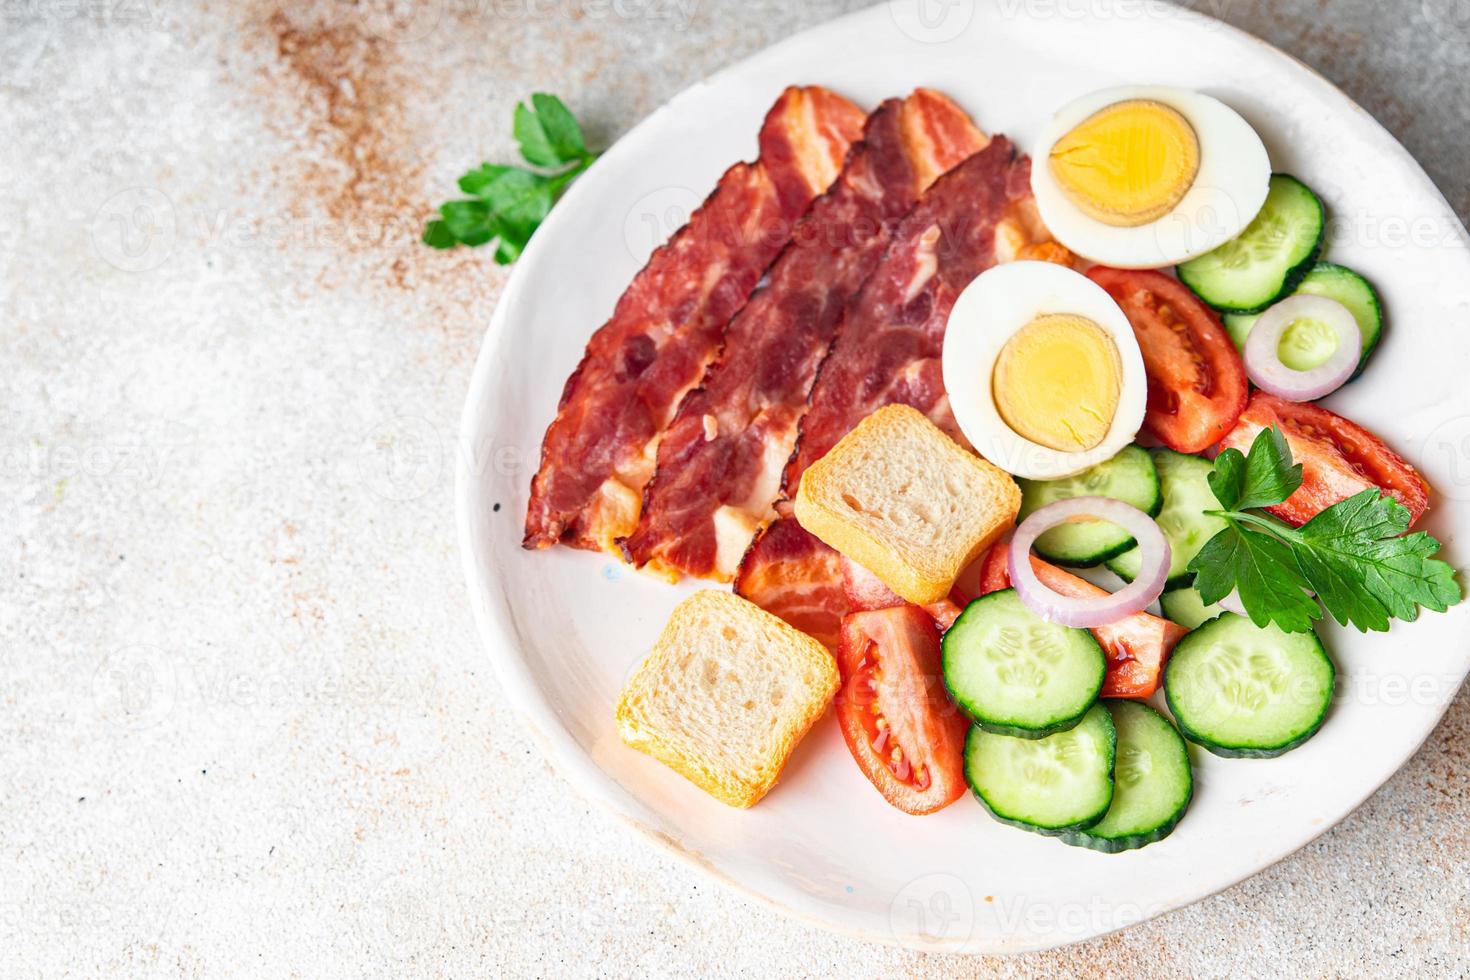 Frühstücksspeck, Eier, Gemüse gesunder Essenssnack auf dem Tischkopierraum foto